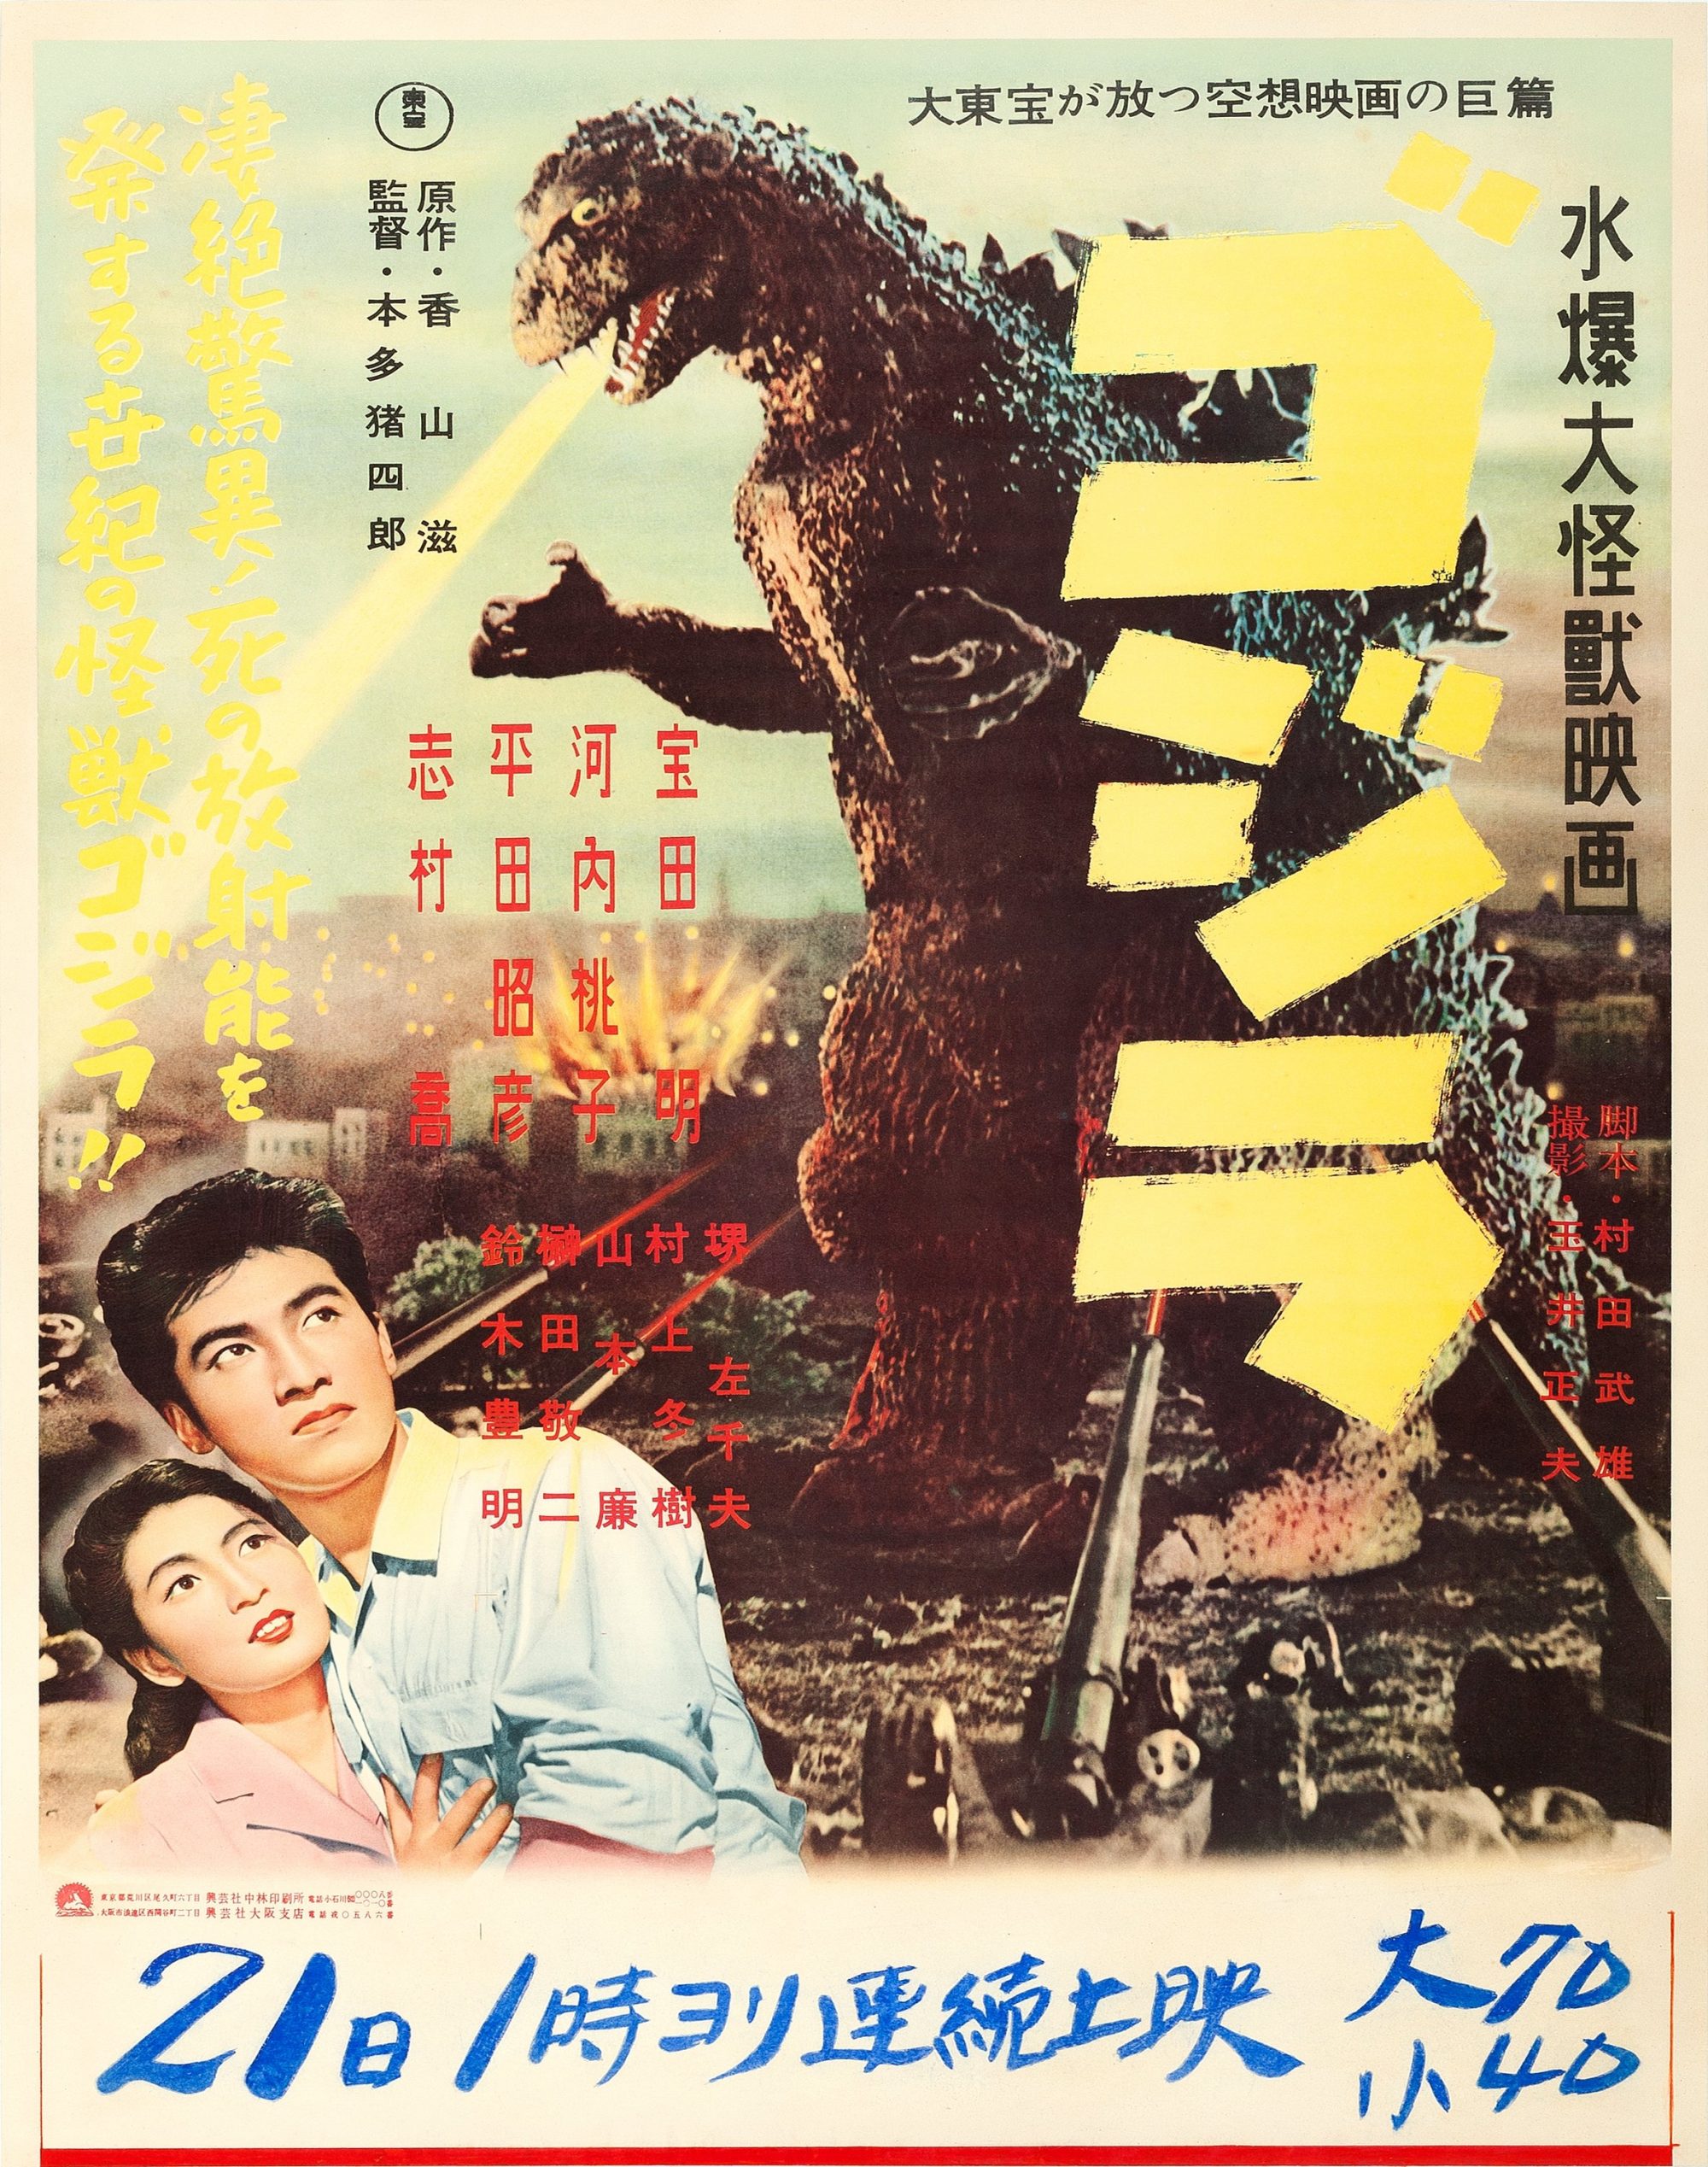 1954 Japanese Godzilla poster